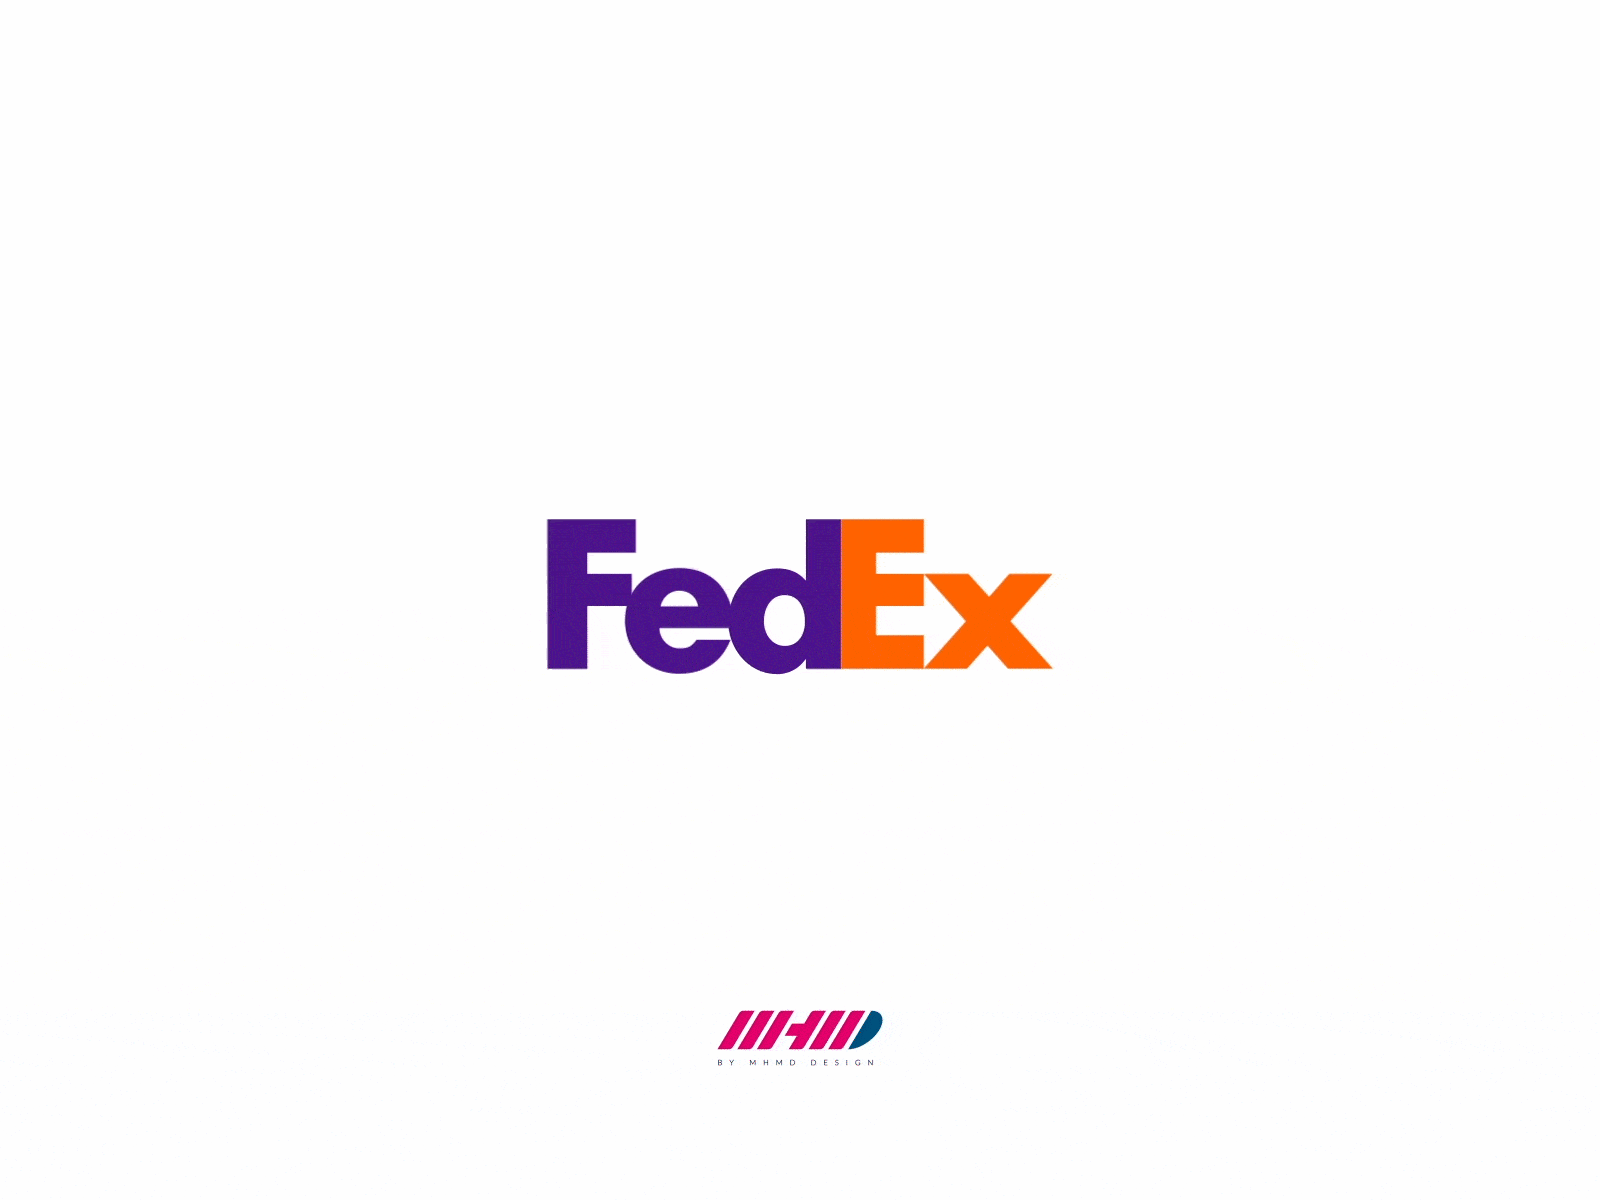 Fedex logo animation